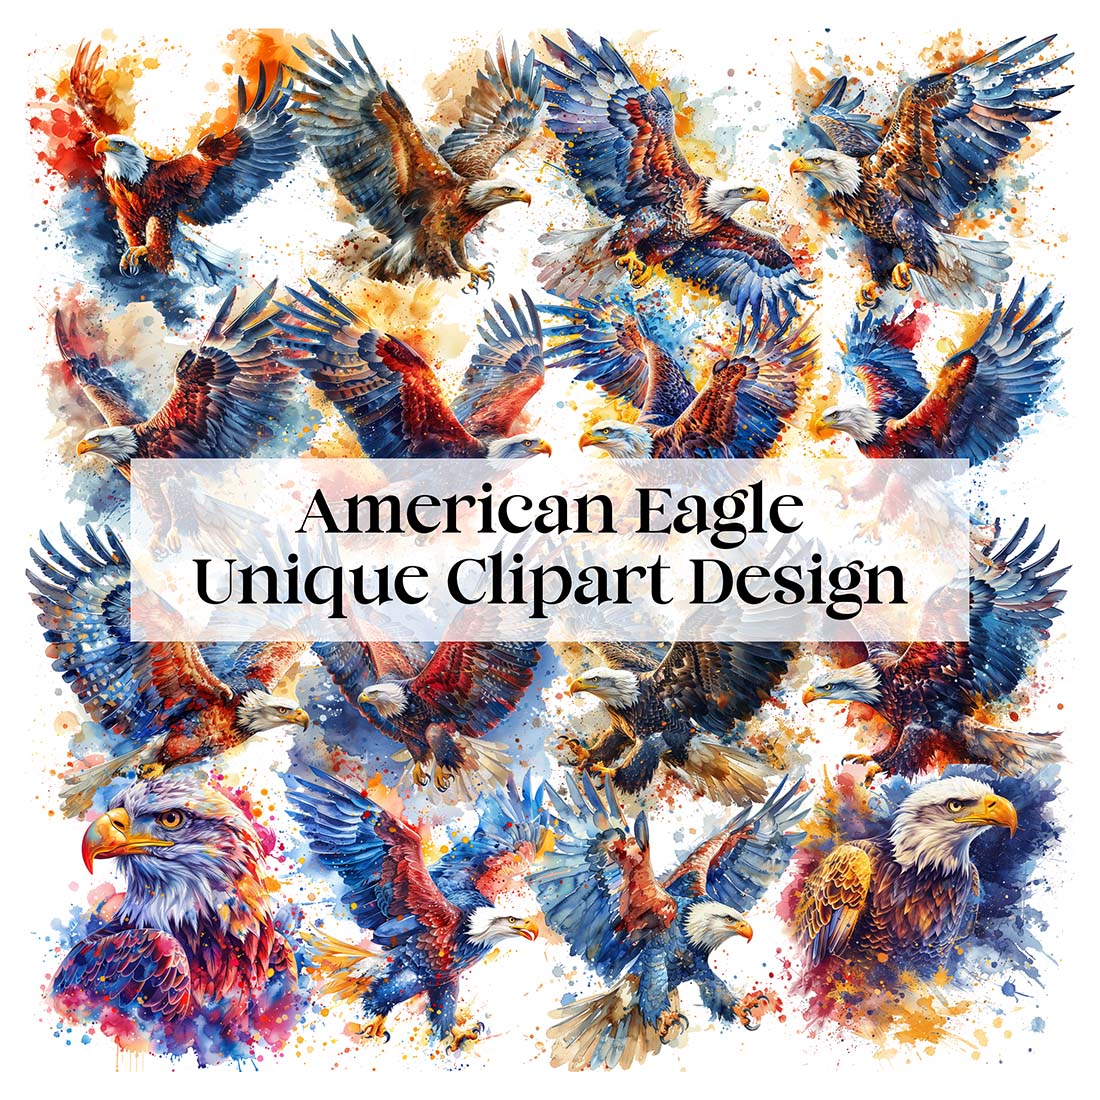 American Eagle Unique Clipart Design cover image.